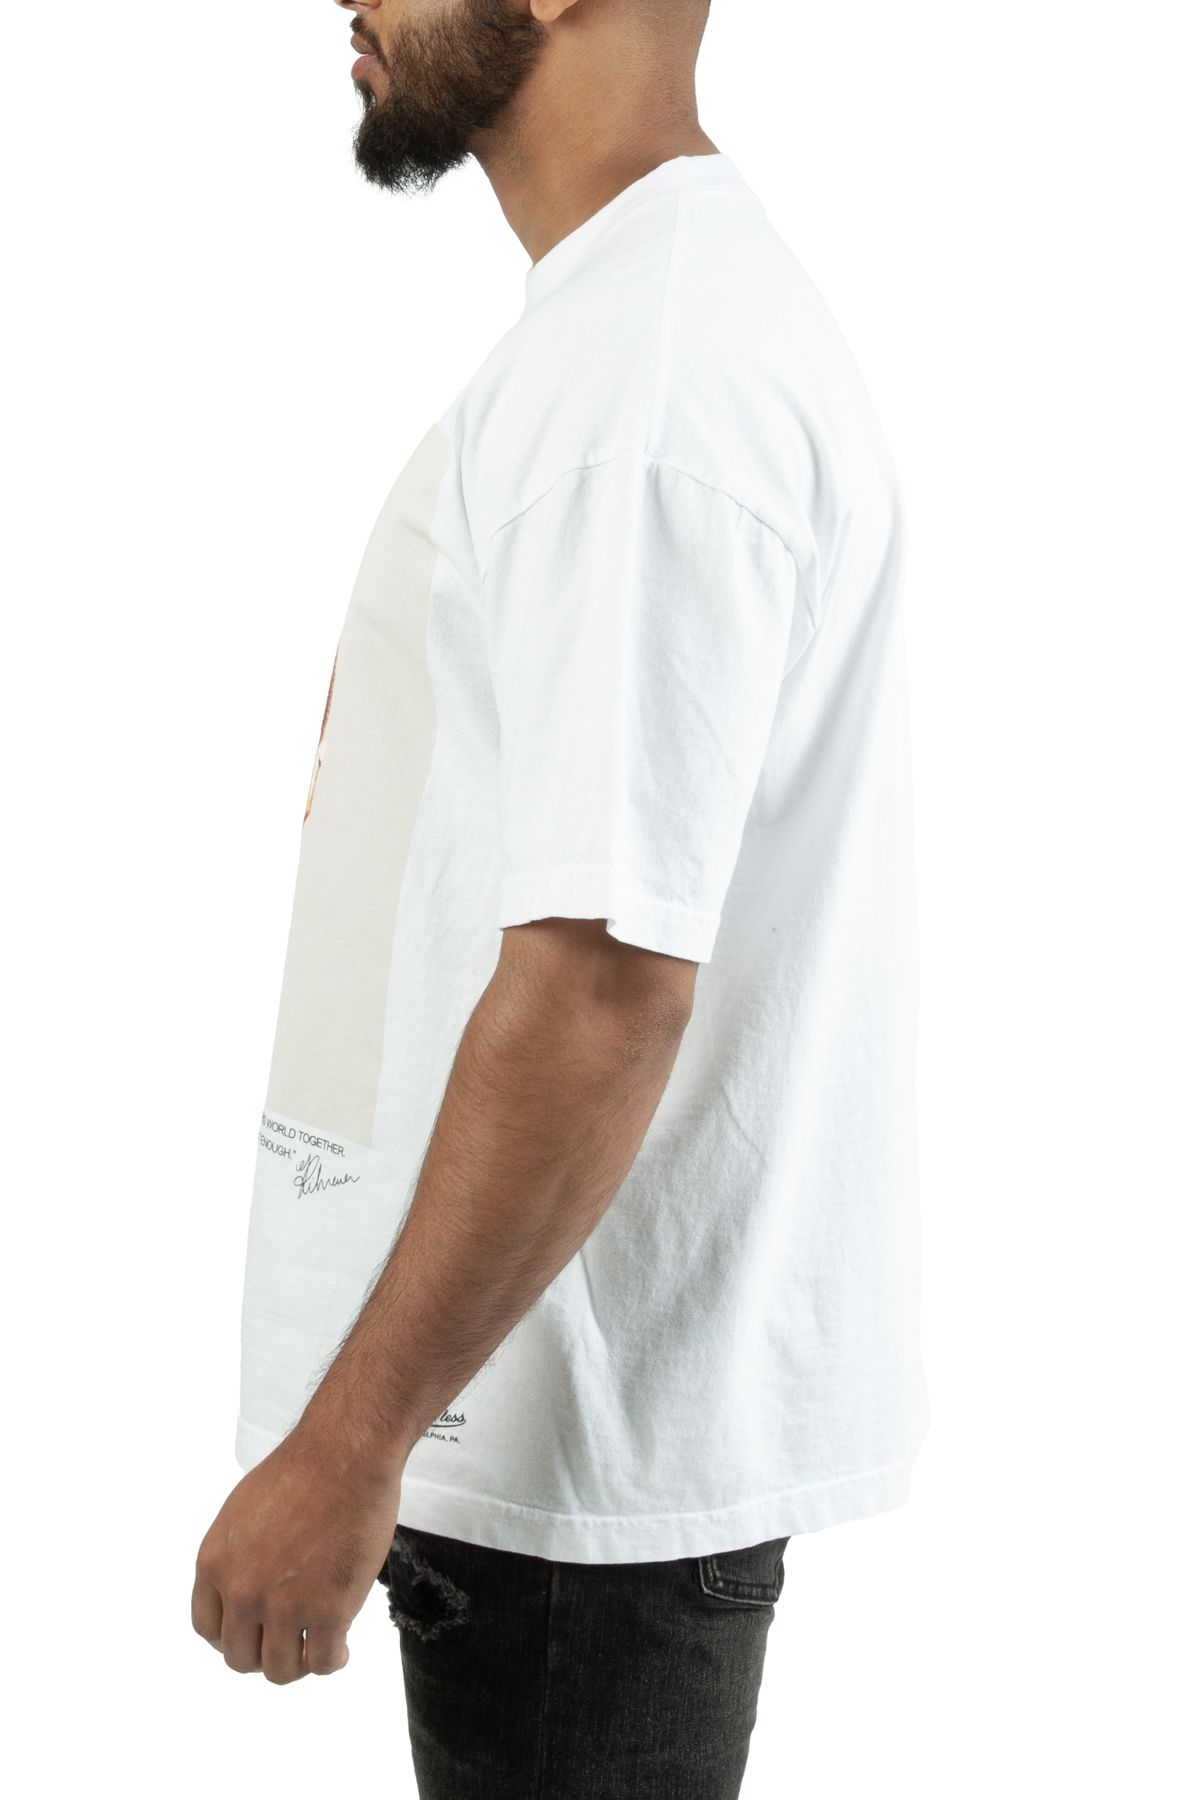 Starter Super Bowl LVII Graphic Mens Short Sleeve Shirt White